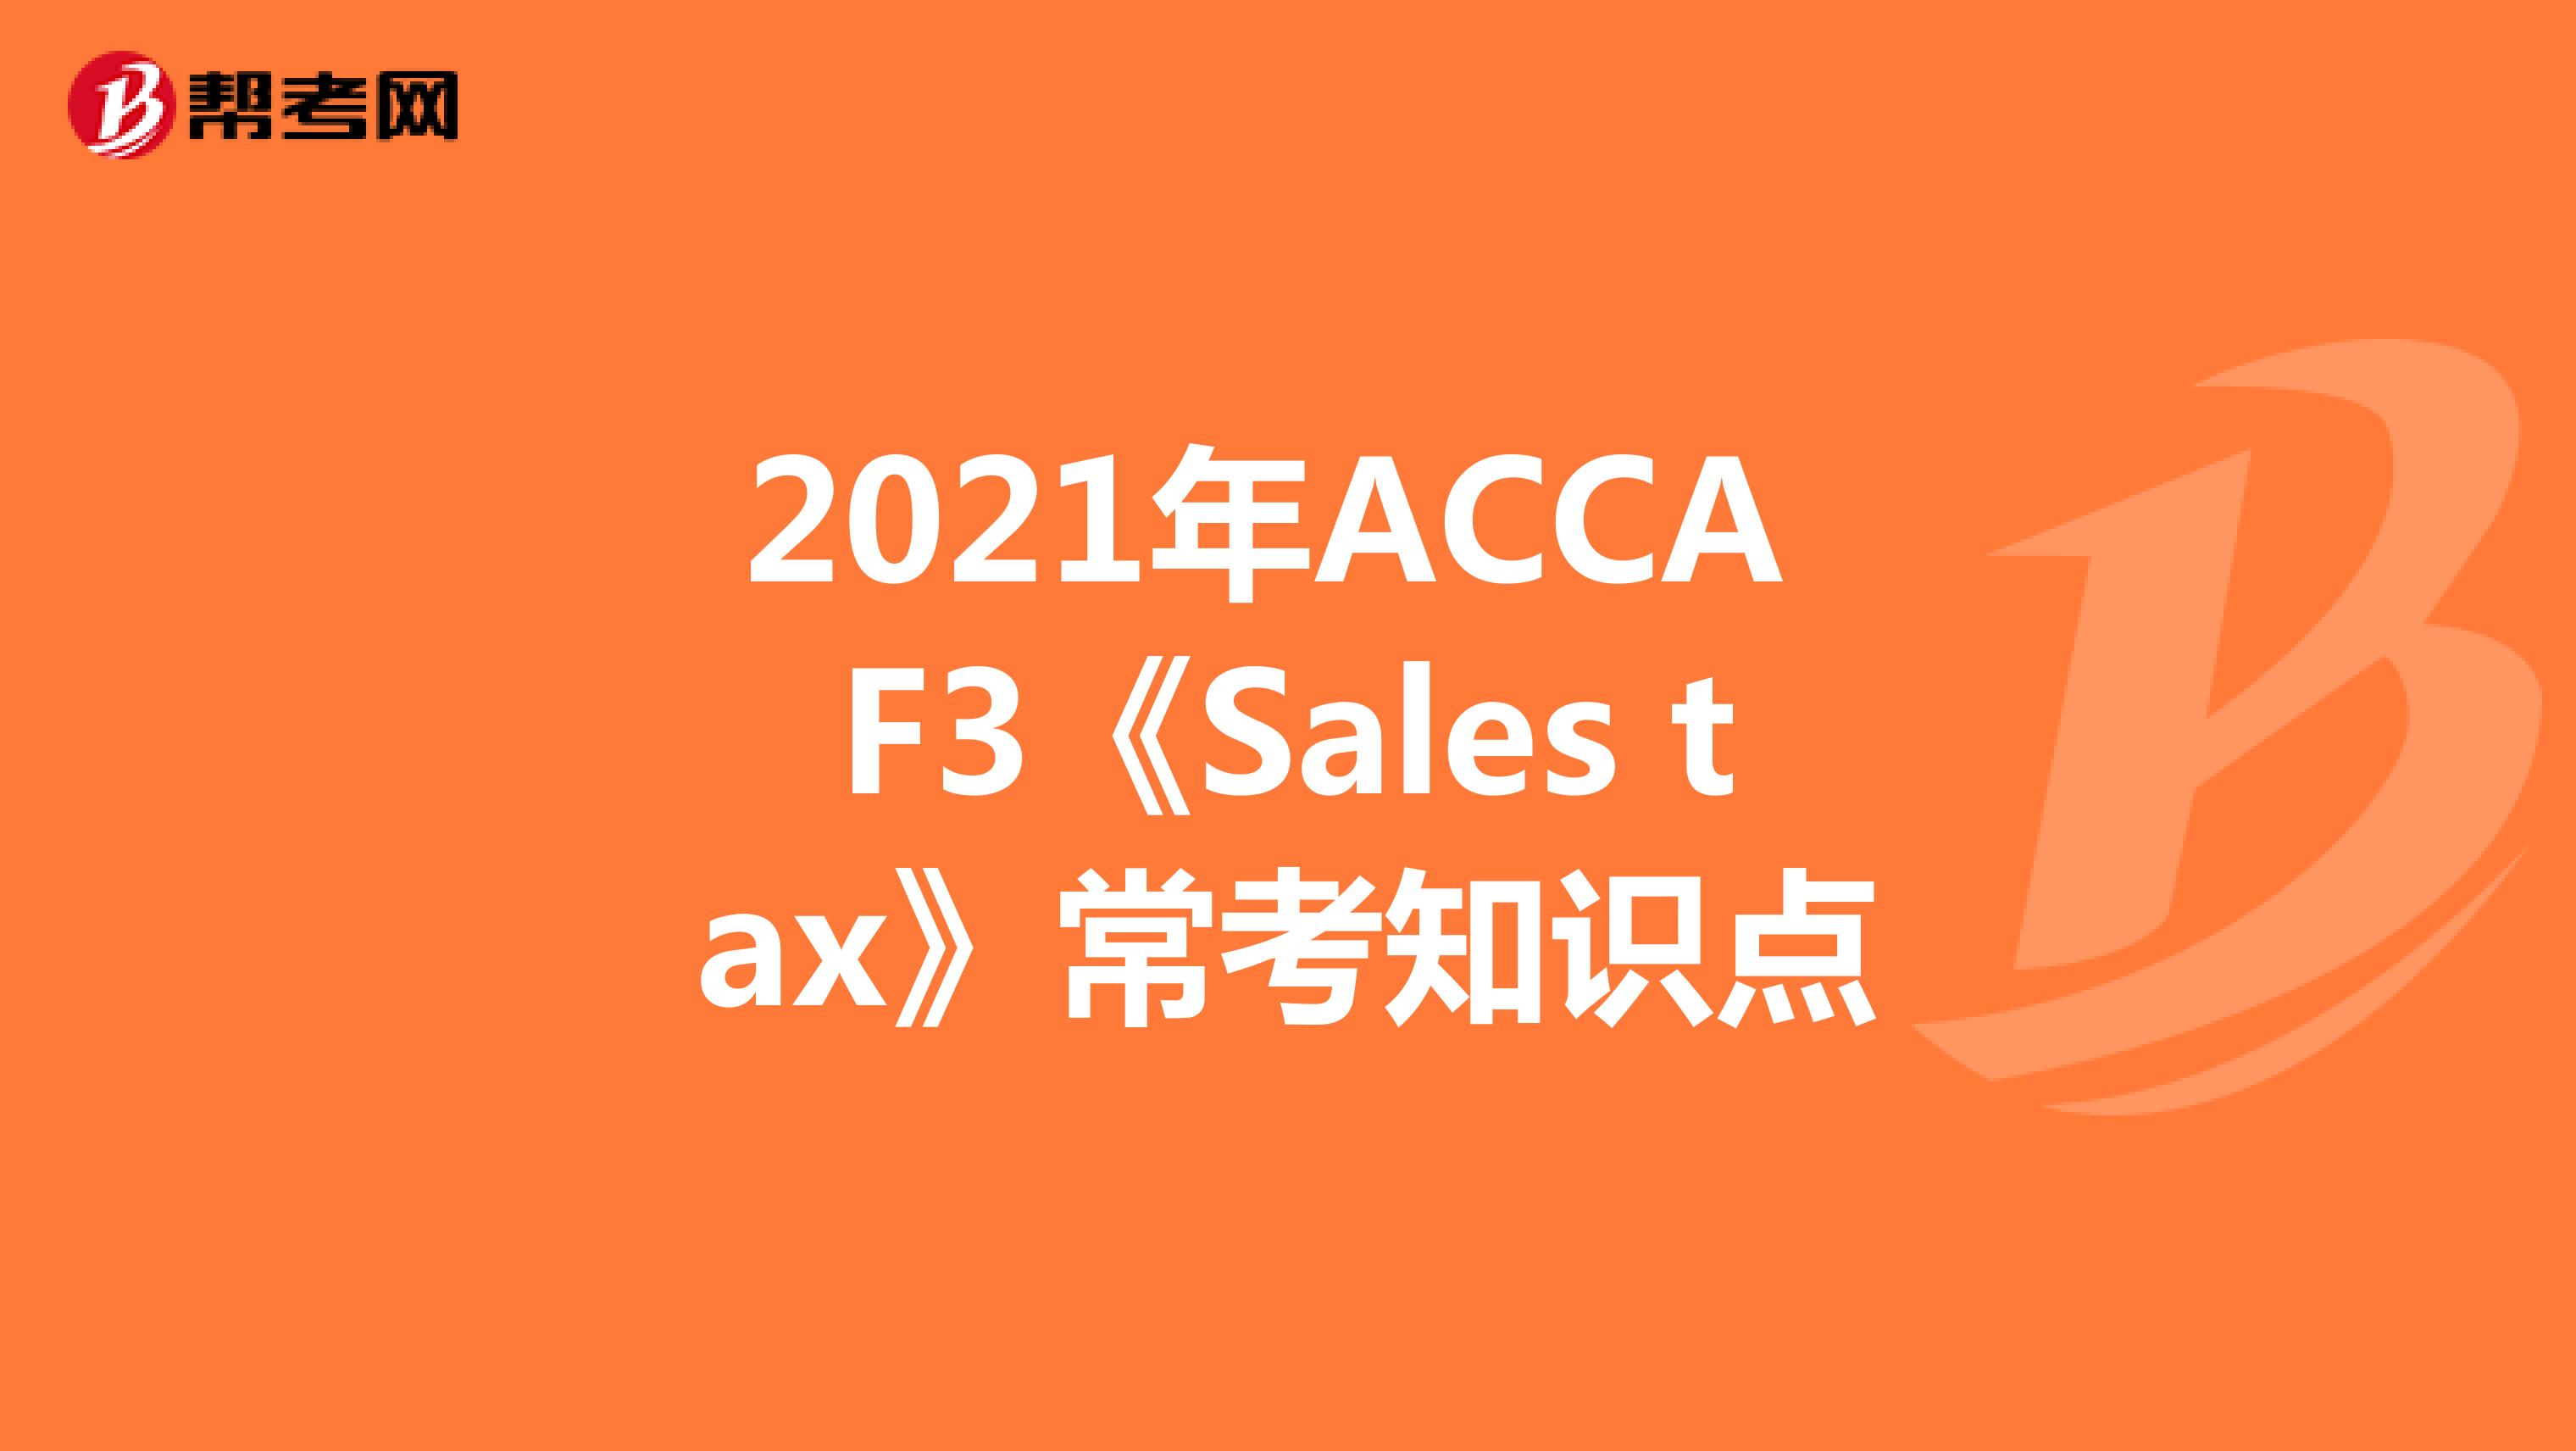 2021年ACCA F3《Sales tax》常考知识点